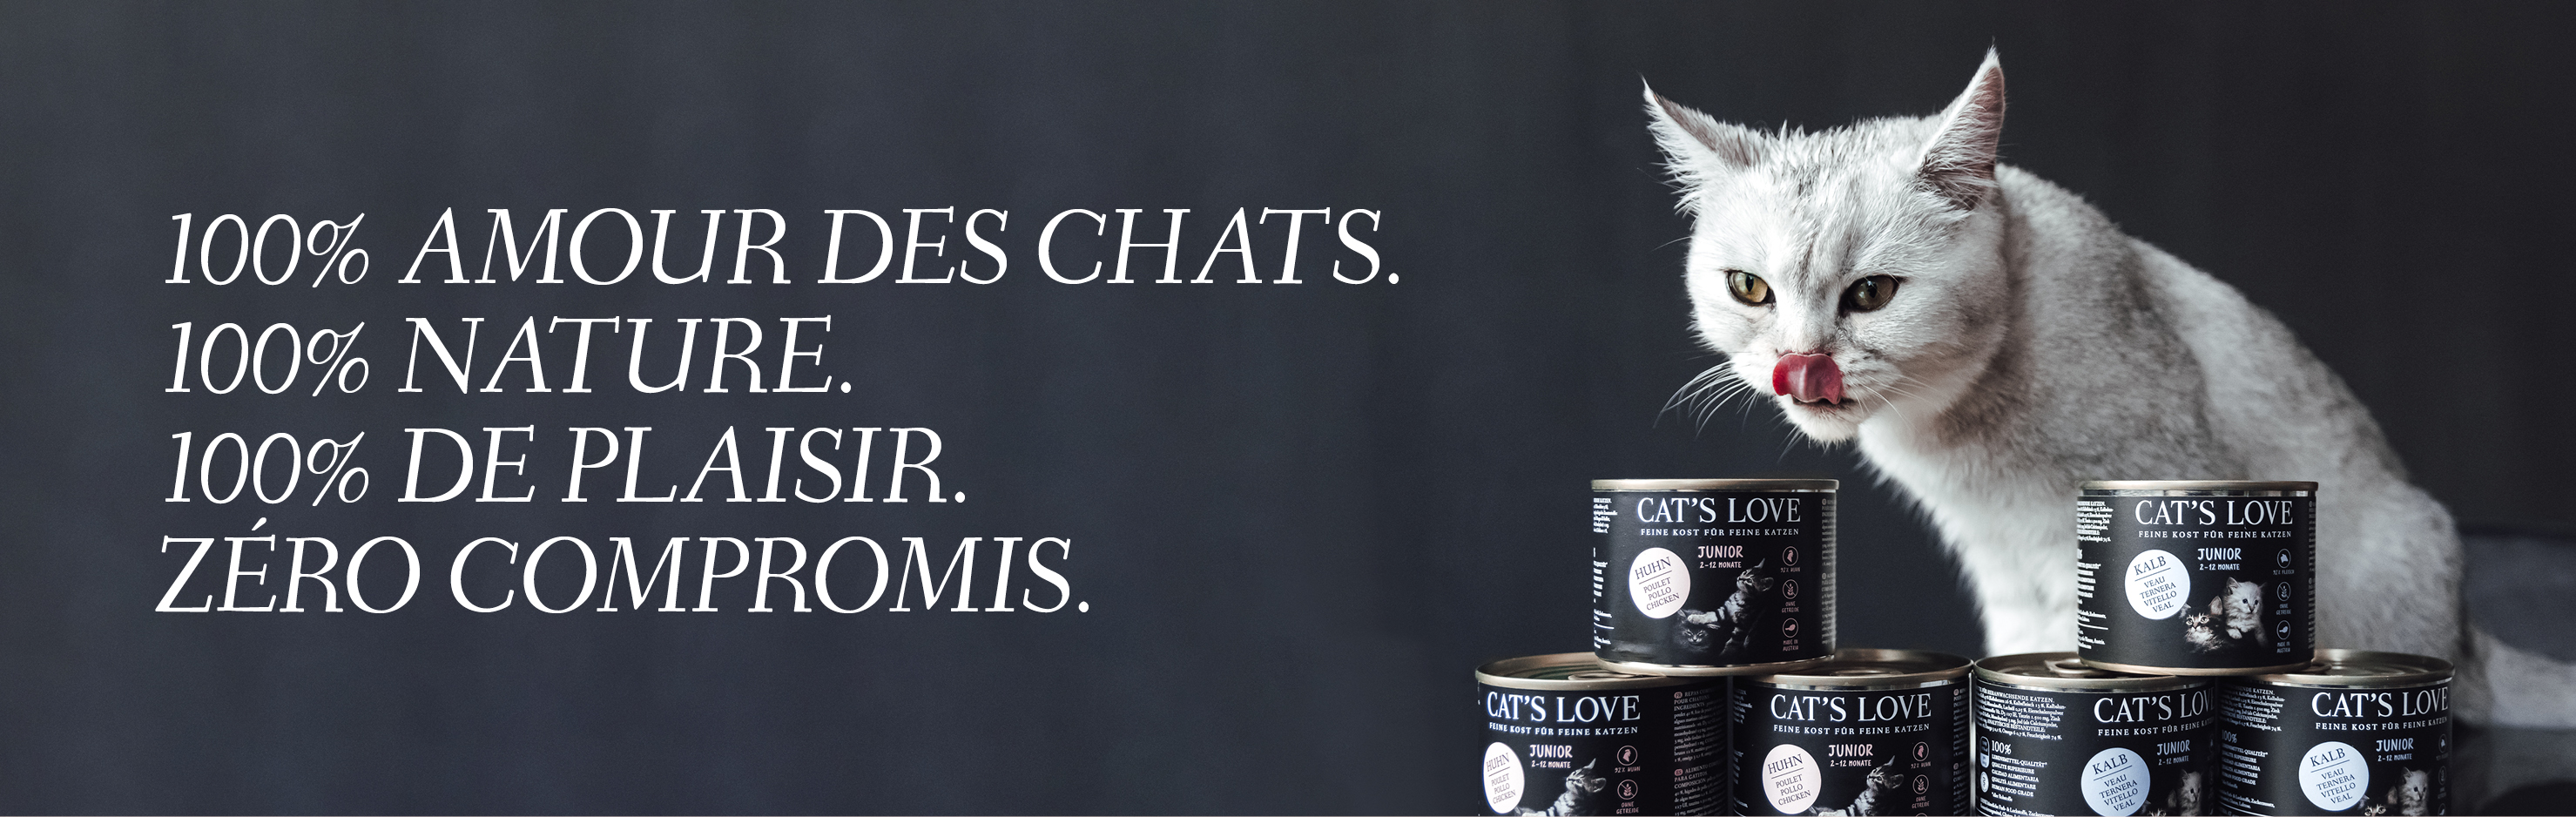 Bannière avec un chat qui se lèche la gueule et sur laquelle des produits CAT'S LOVE sont présentés devant lui. Le texte sur la bannière dit : 100% AMOUR DES CHATS. 100% NATURE. 10% DE PLAISIR. Pas de compromis.